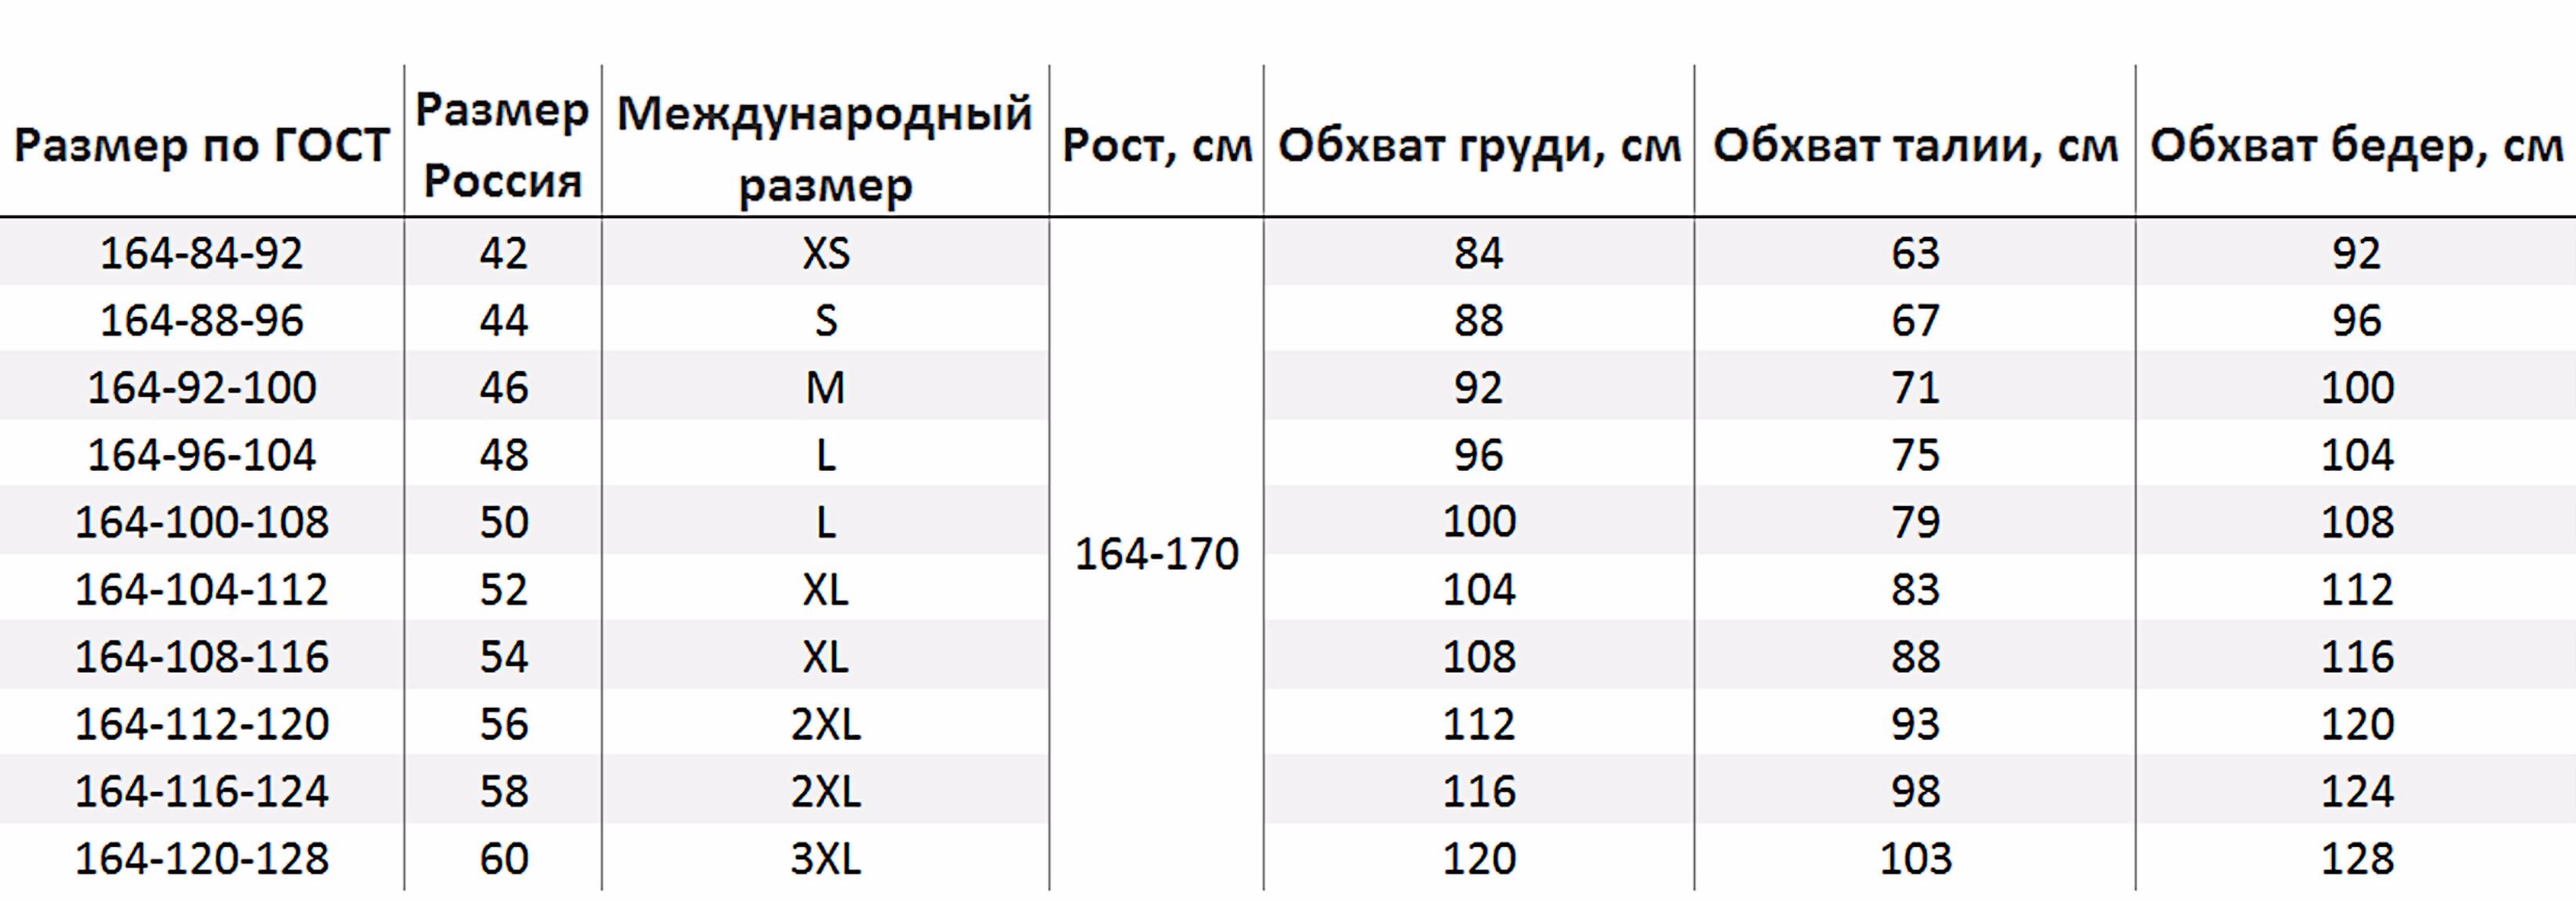 Таблица размеров женской одежды Россия ГОСТ